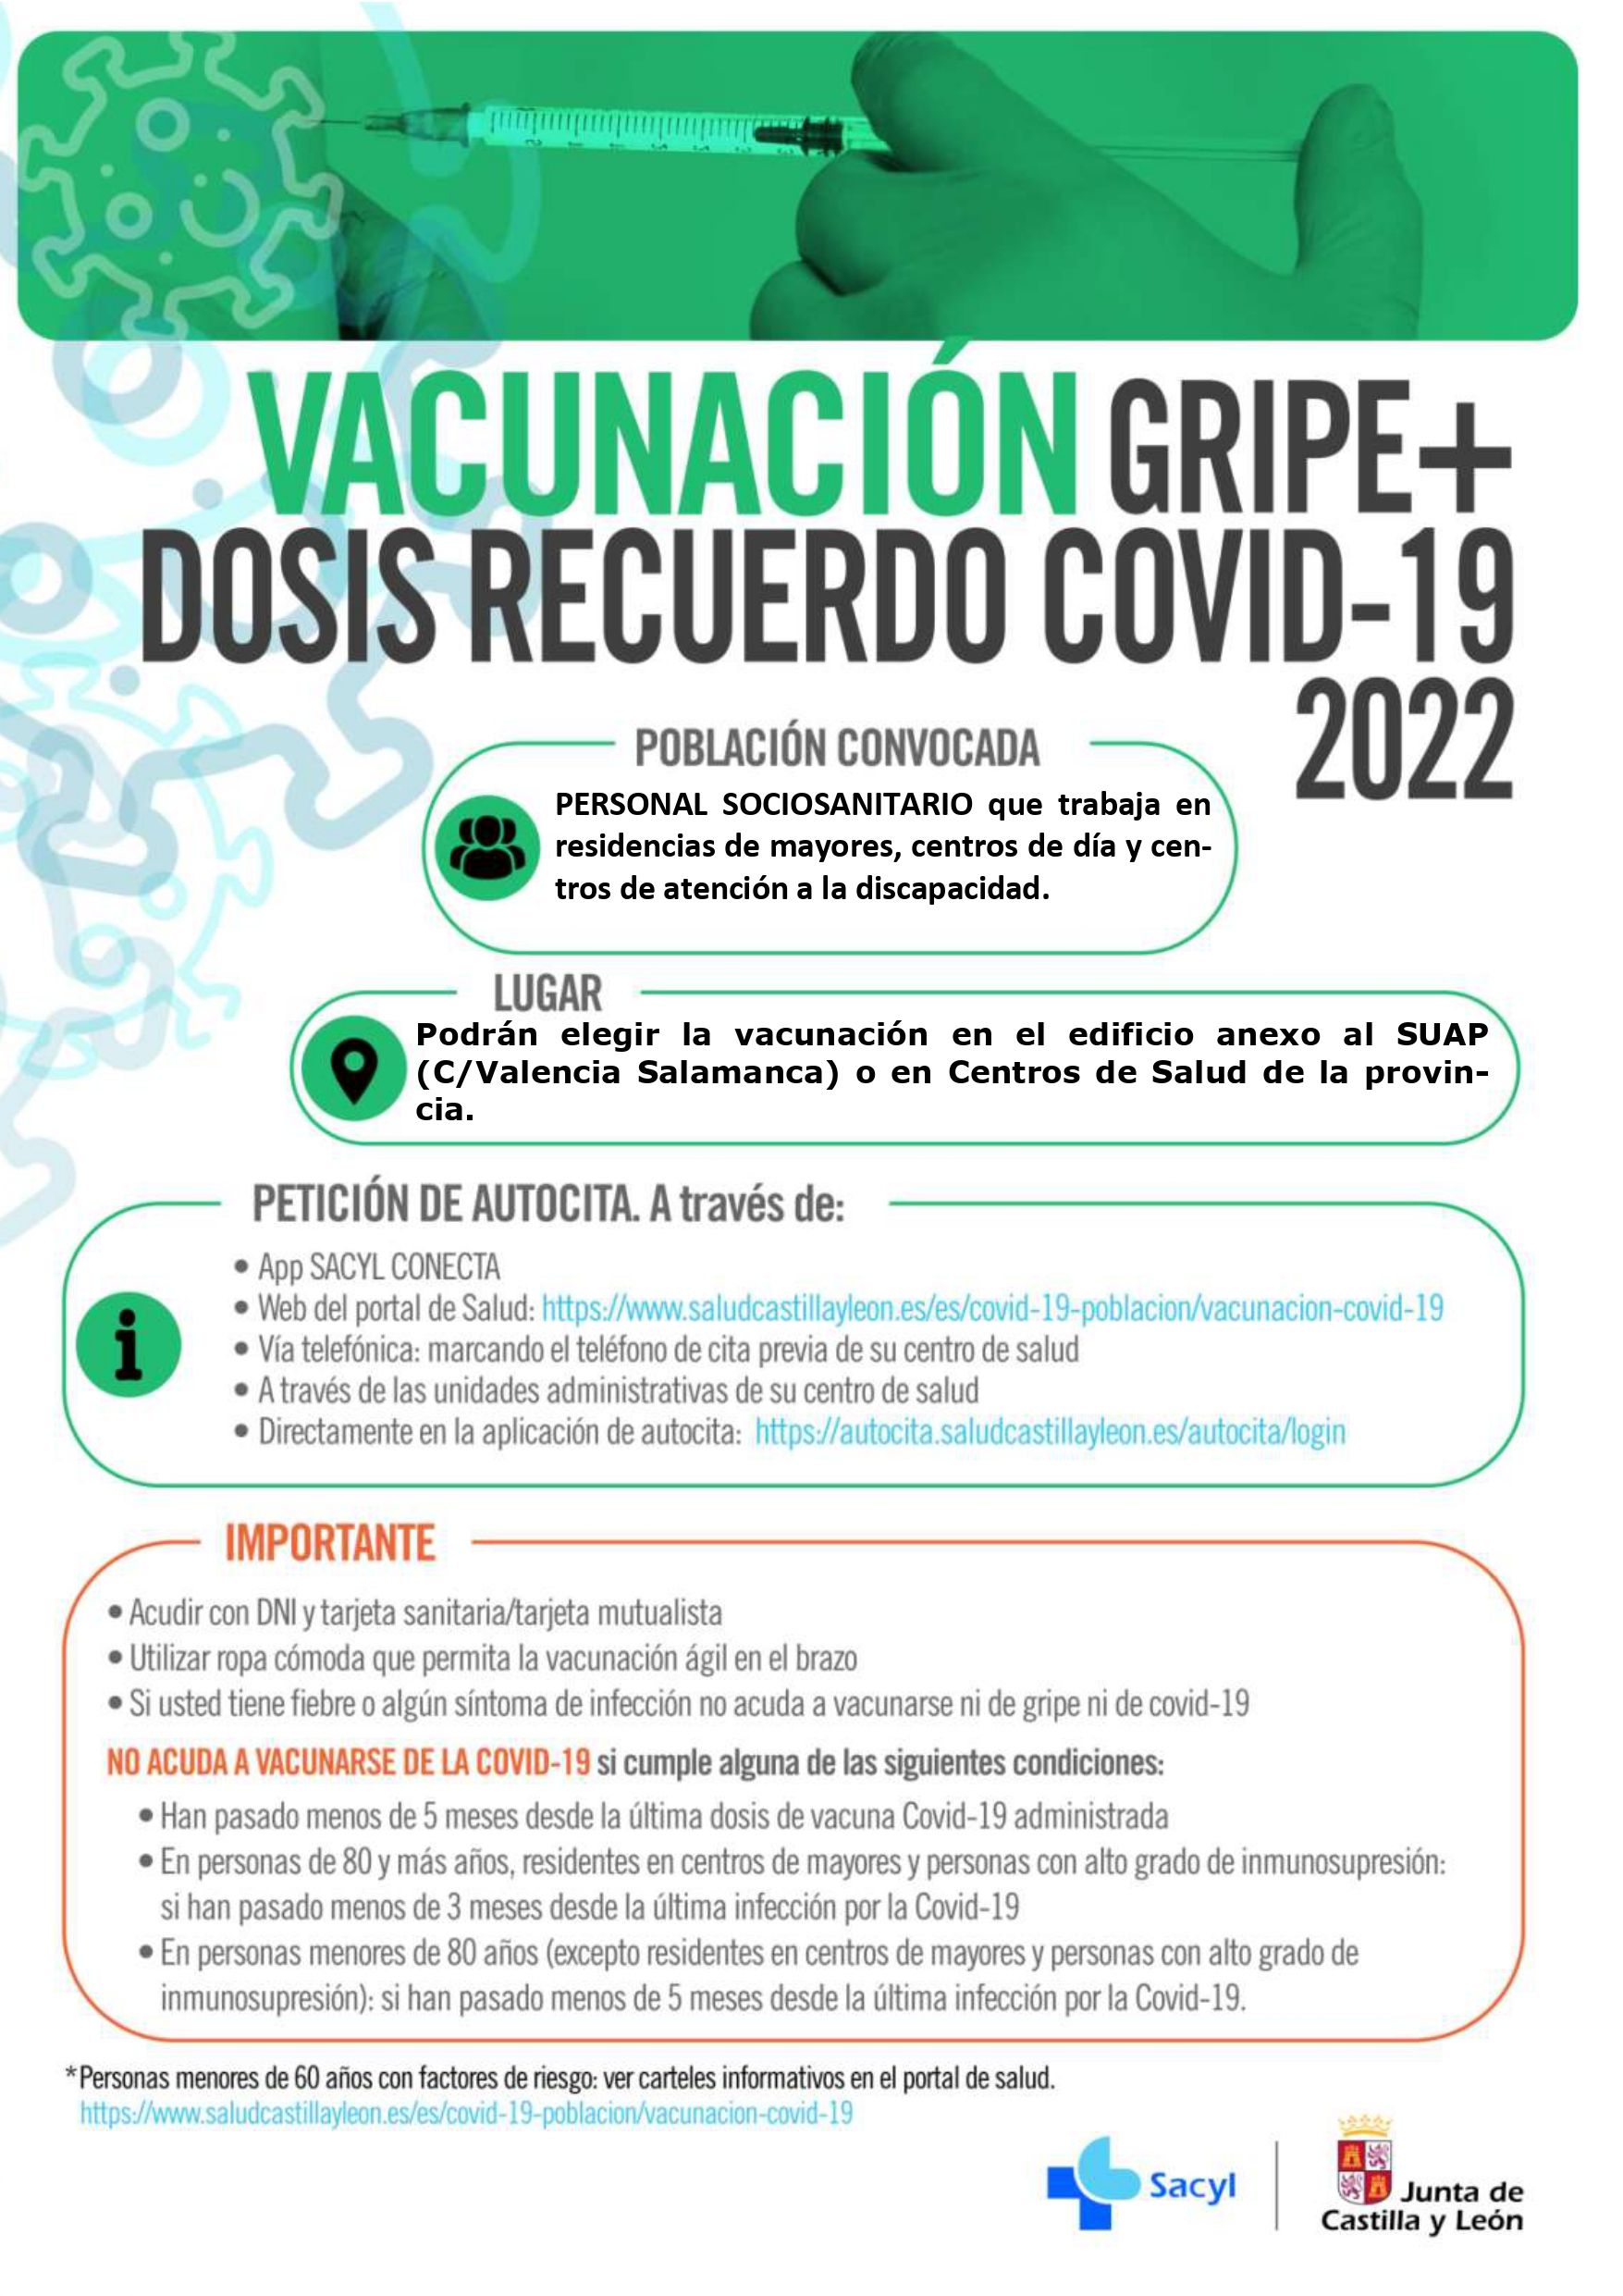 Inoculación conjunta de la vacuna de la gripe y la covid para el personal sociosanitario de Salamanca